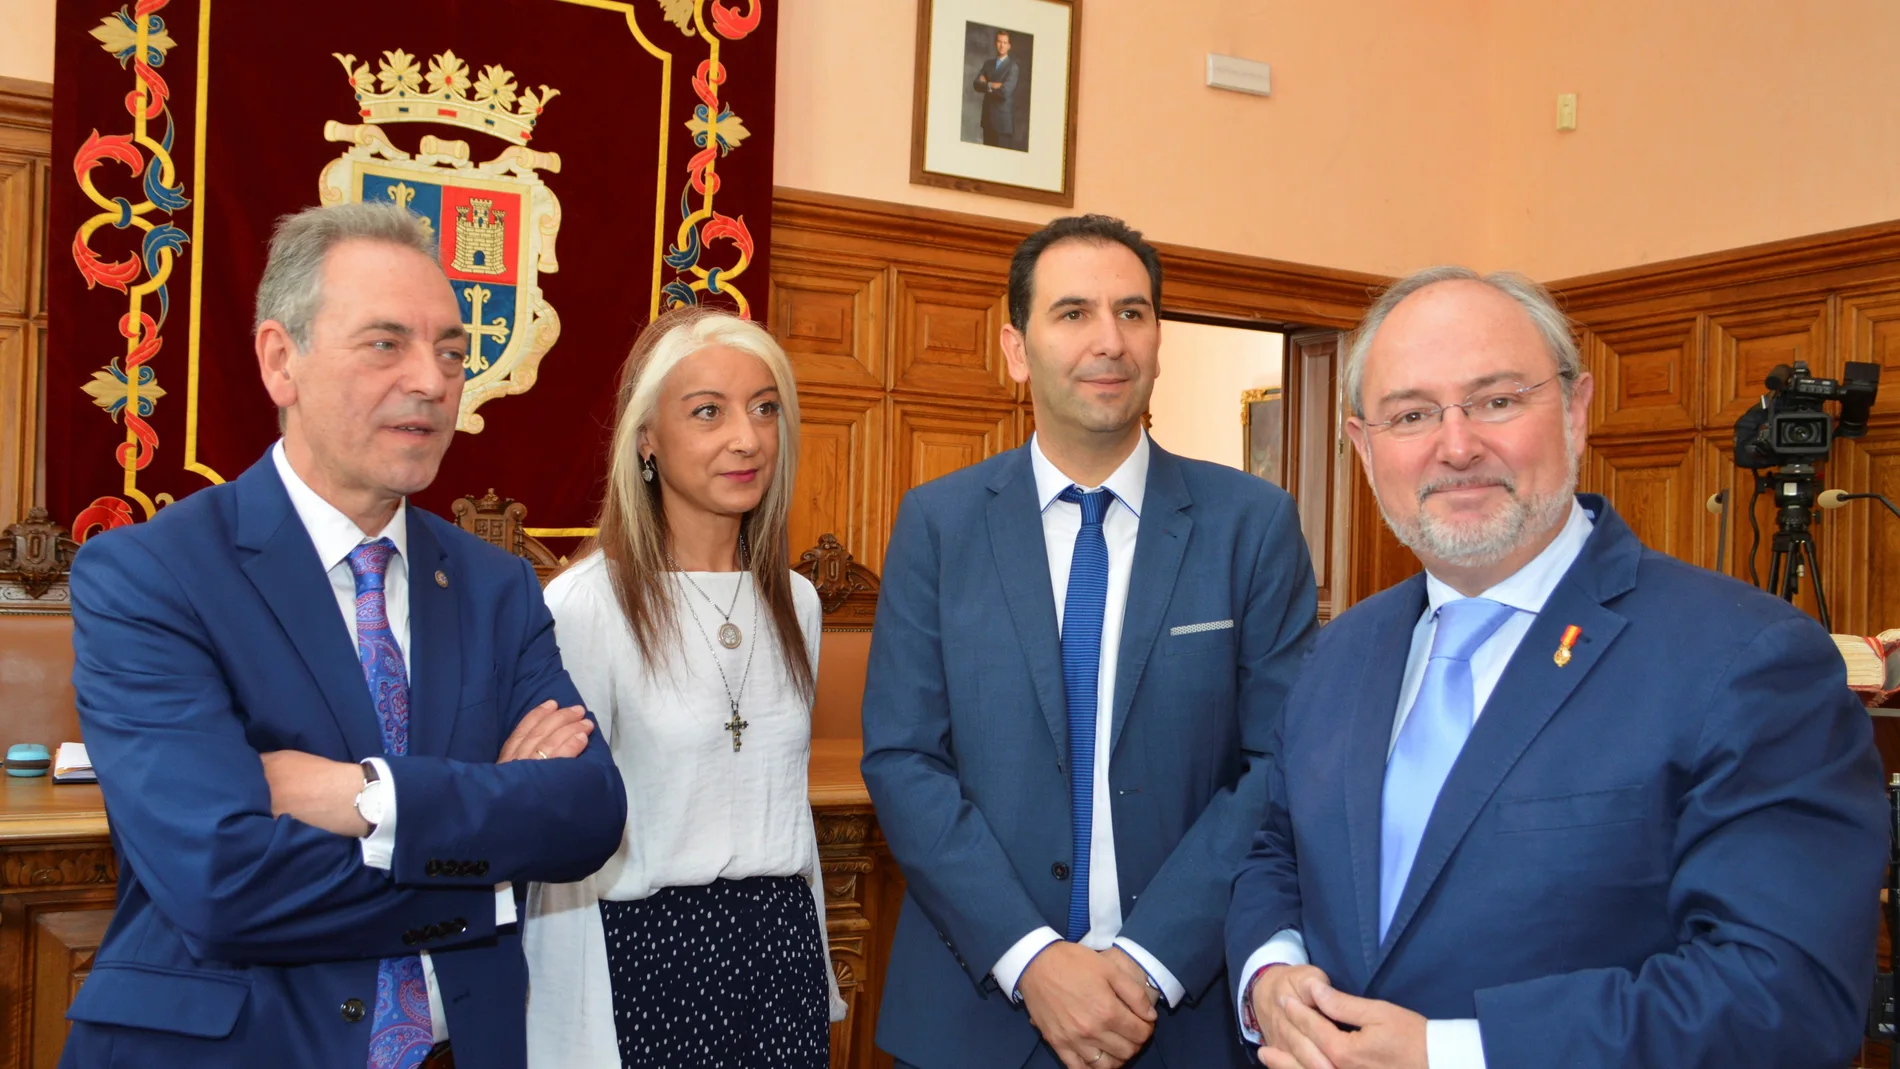 El alcalde de Palencia, Mario Simón, junto a los otros dos concejales de Cs, Urbano Revilla y Carolina Gómez y el diputado Enrique Rivero